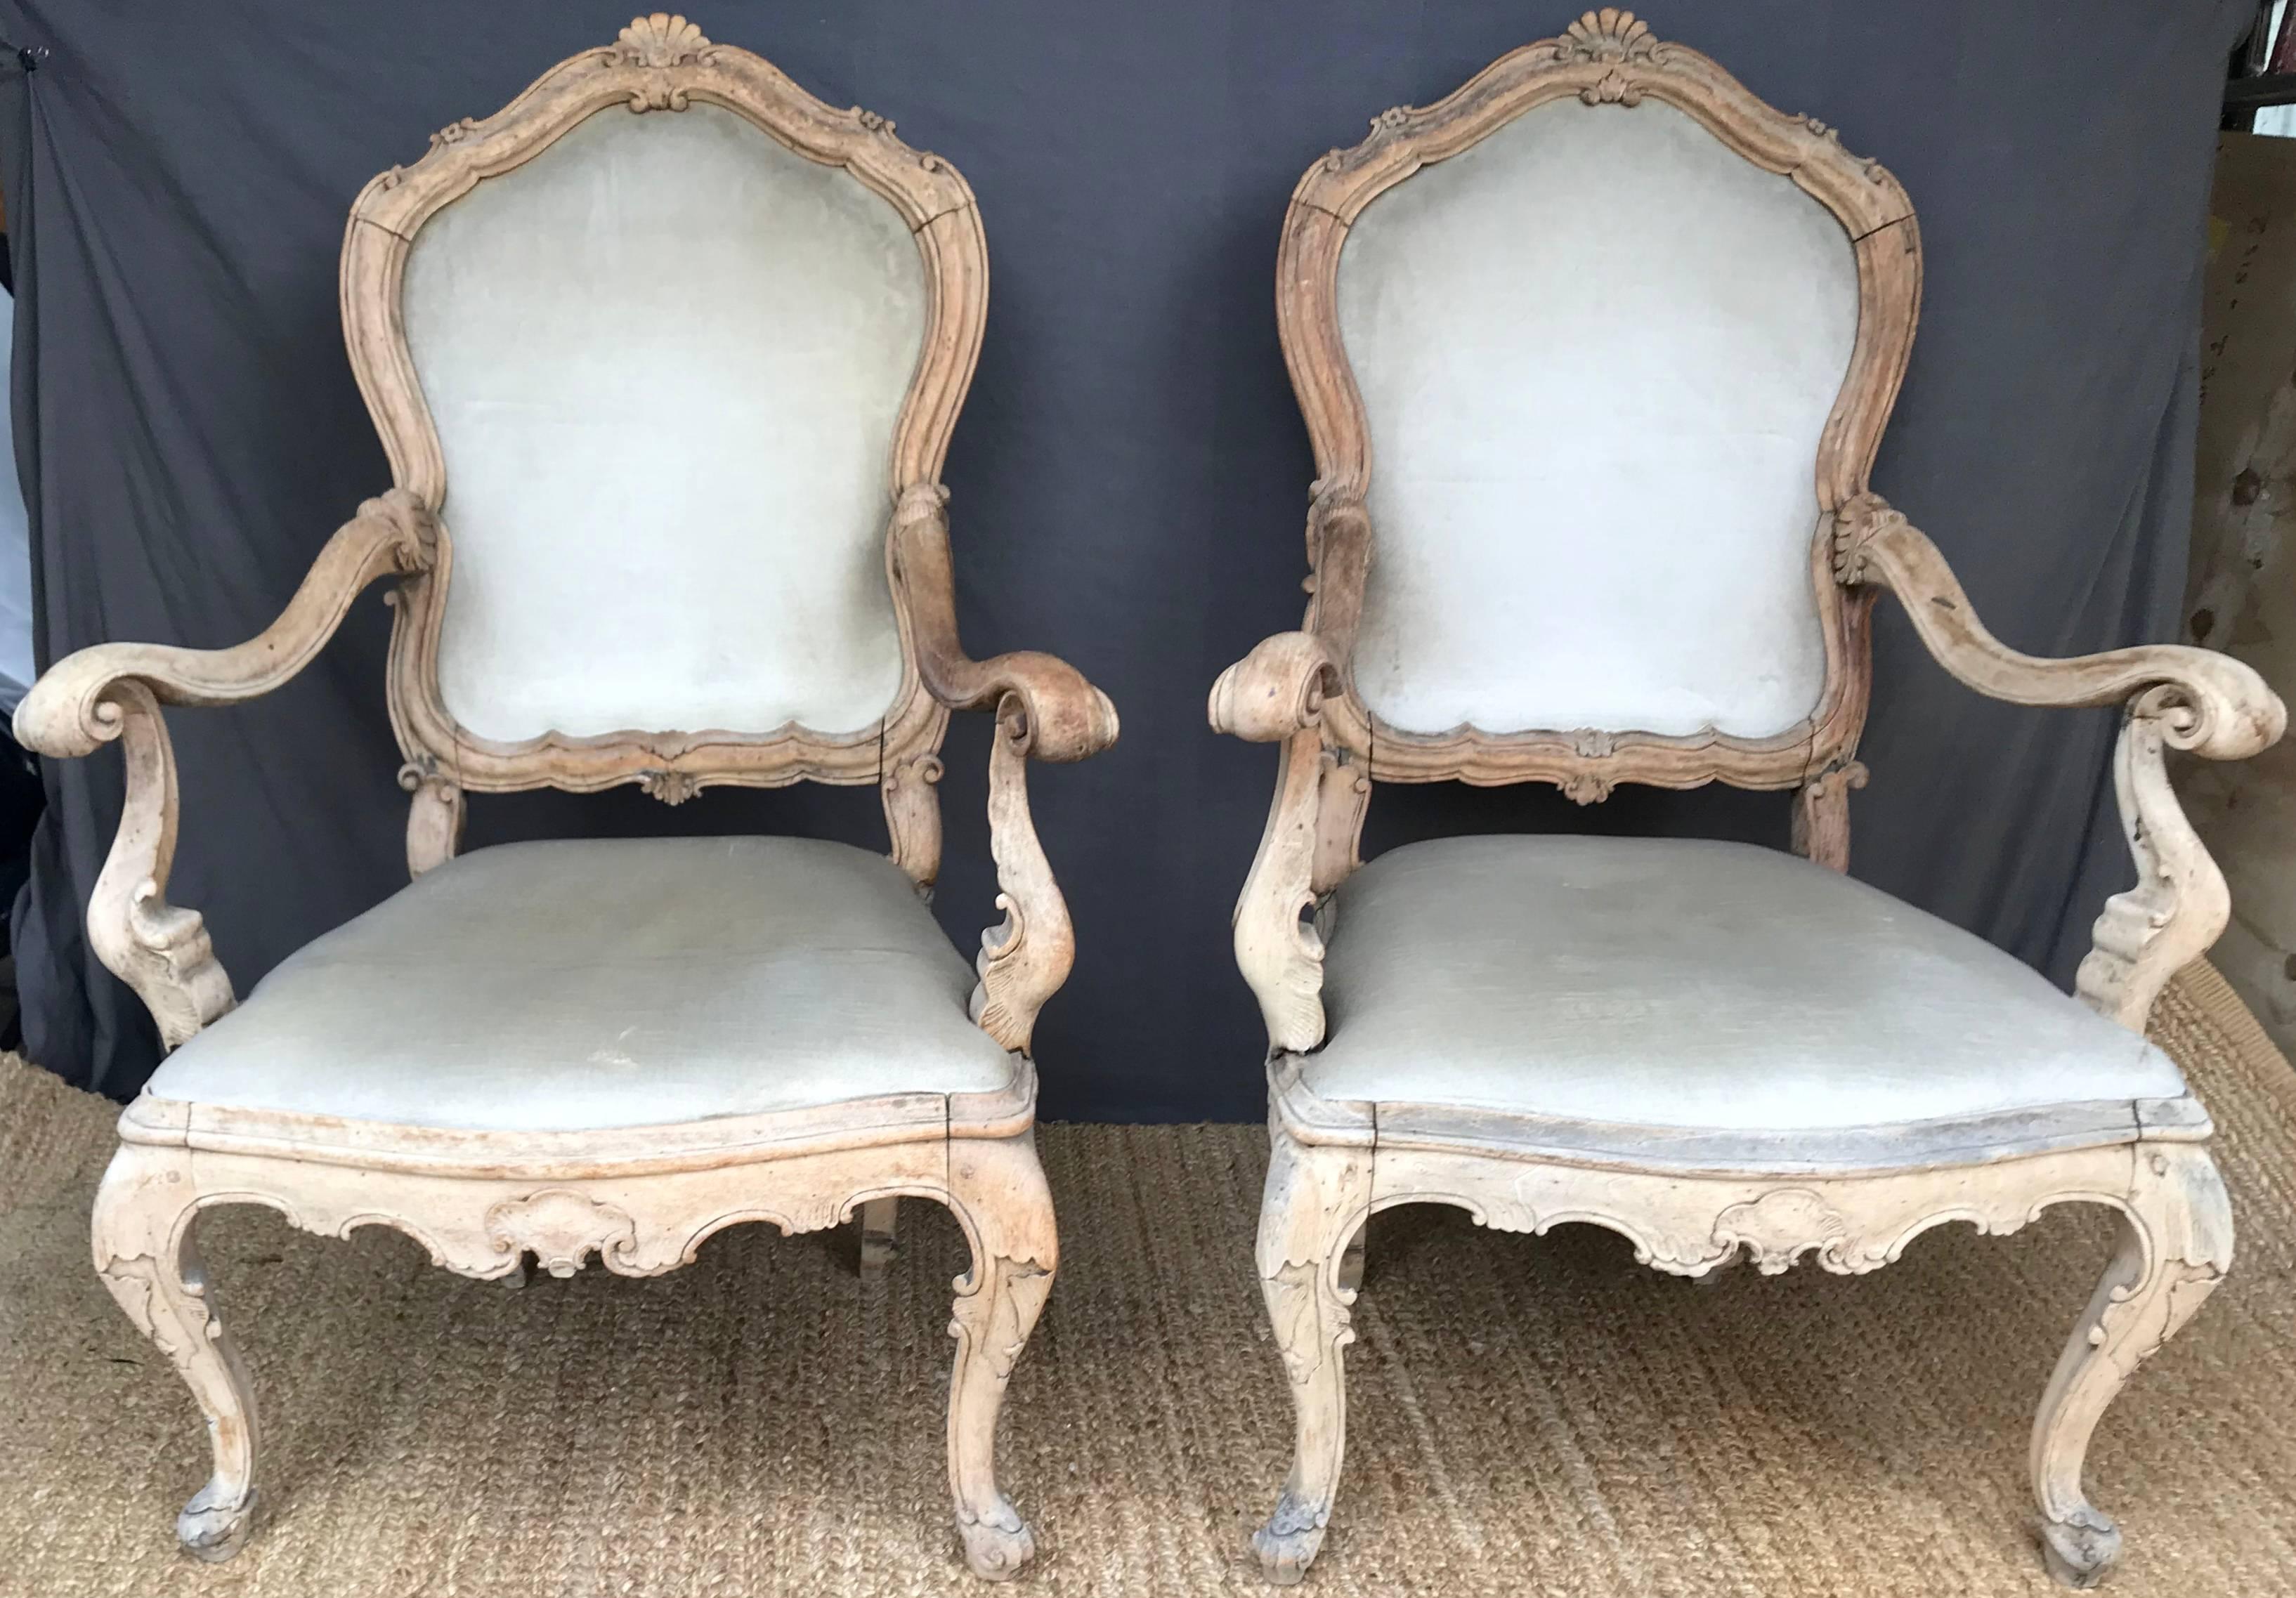 Paire de fauteuils ouverts vénitiens en bois blanchi. Paire d'exceptionnels fauteuils Louis XV sculptés à la vénitienne en état d'origine blanchi avec une tapisserie d'époque en velours de soie naturellement décolorée. Le dossier est sculpté de